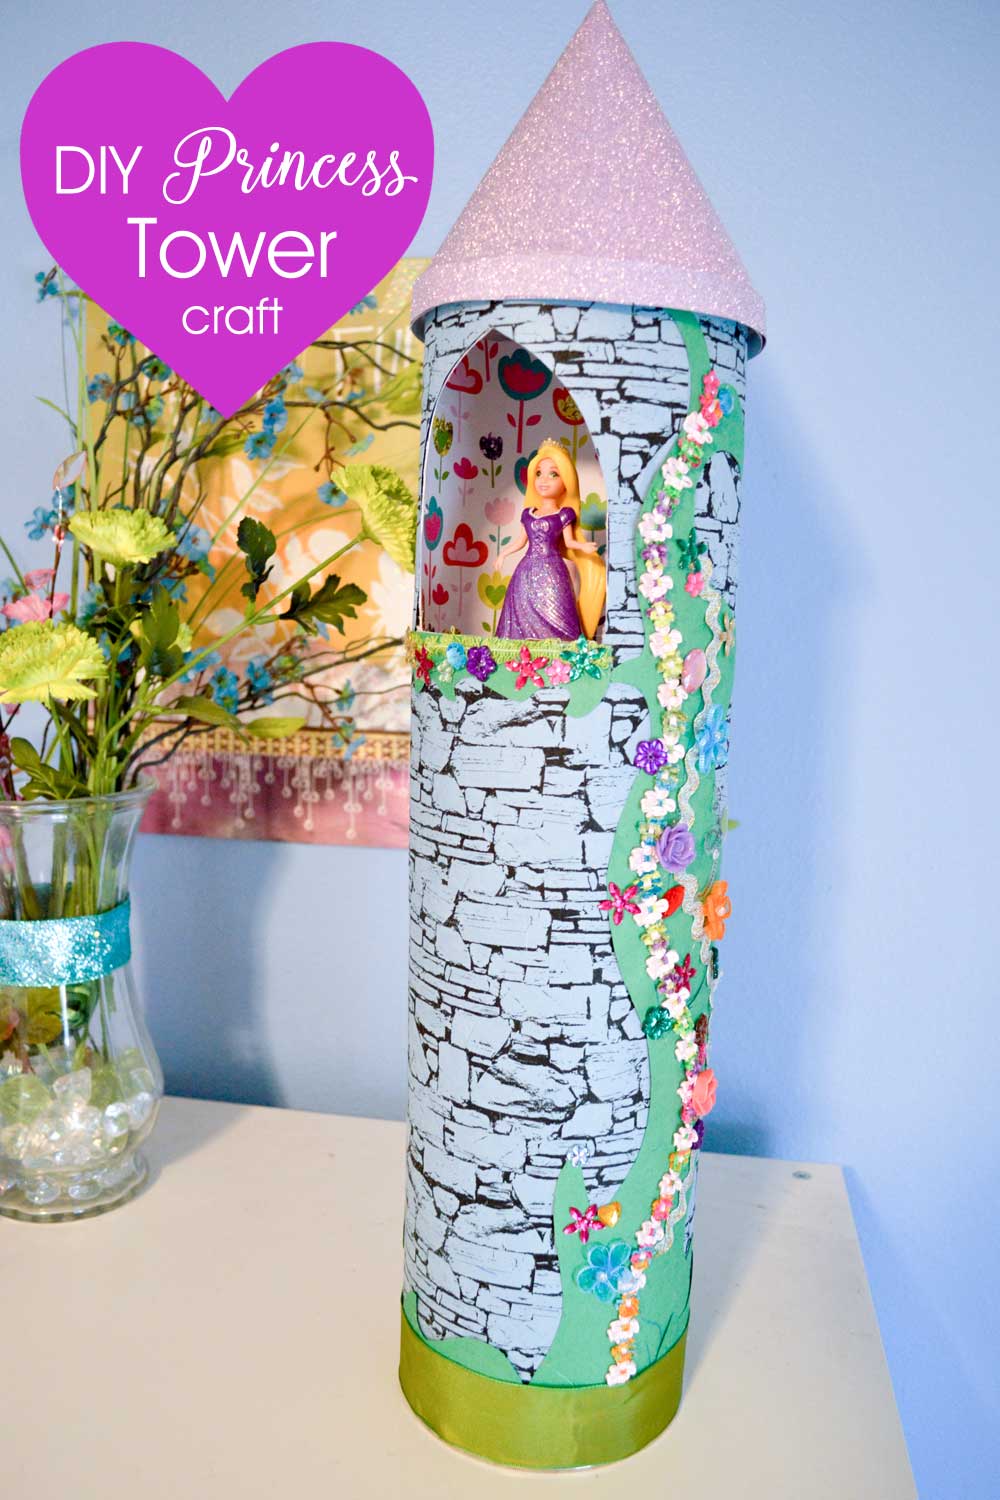 DIY Princess tower kids craft project